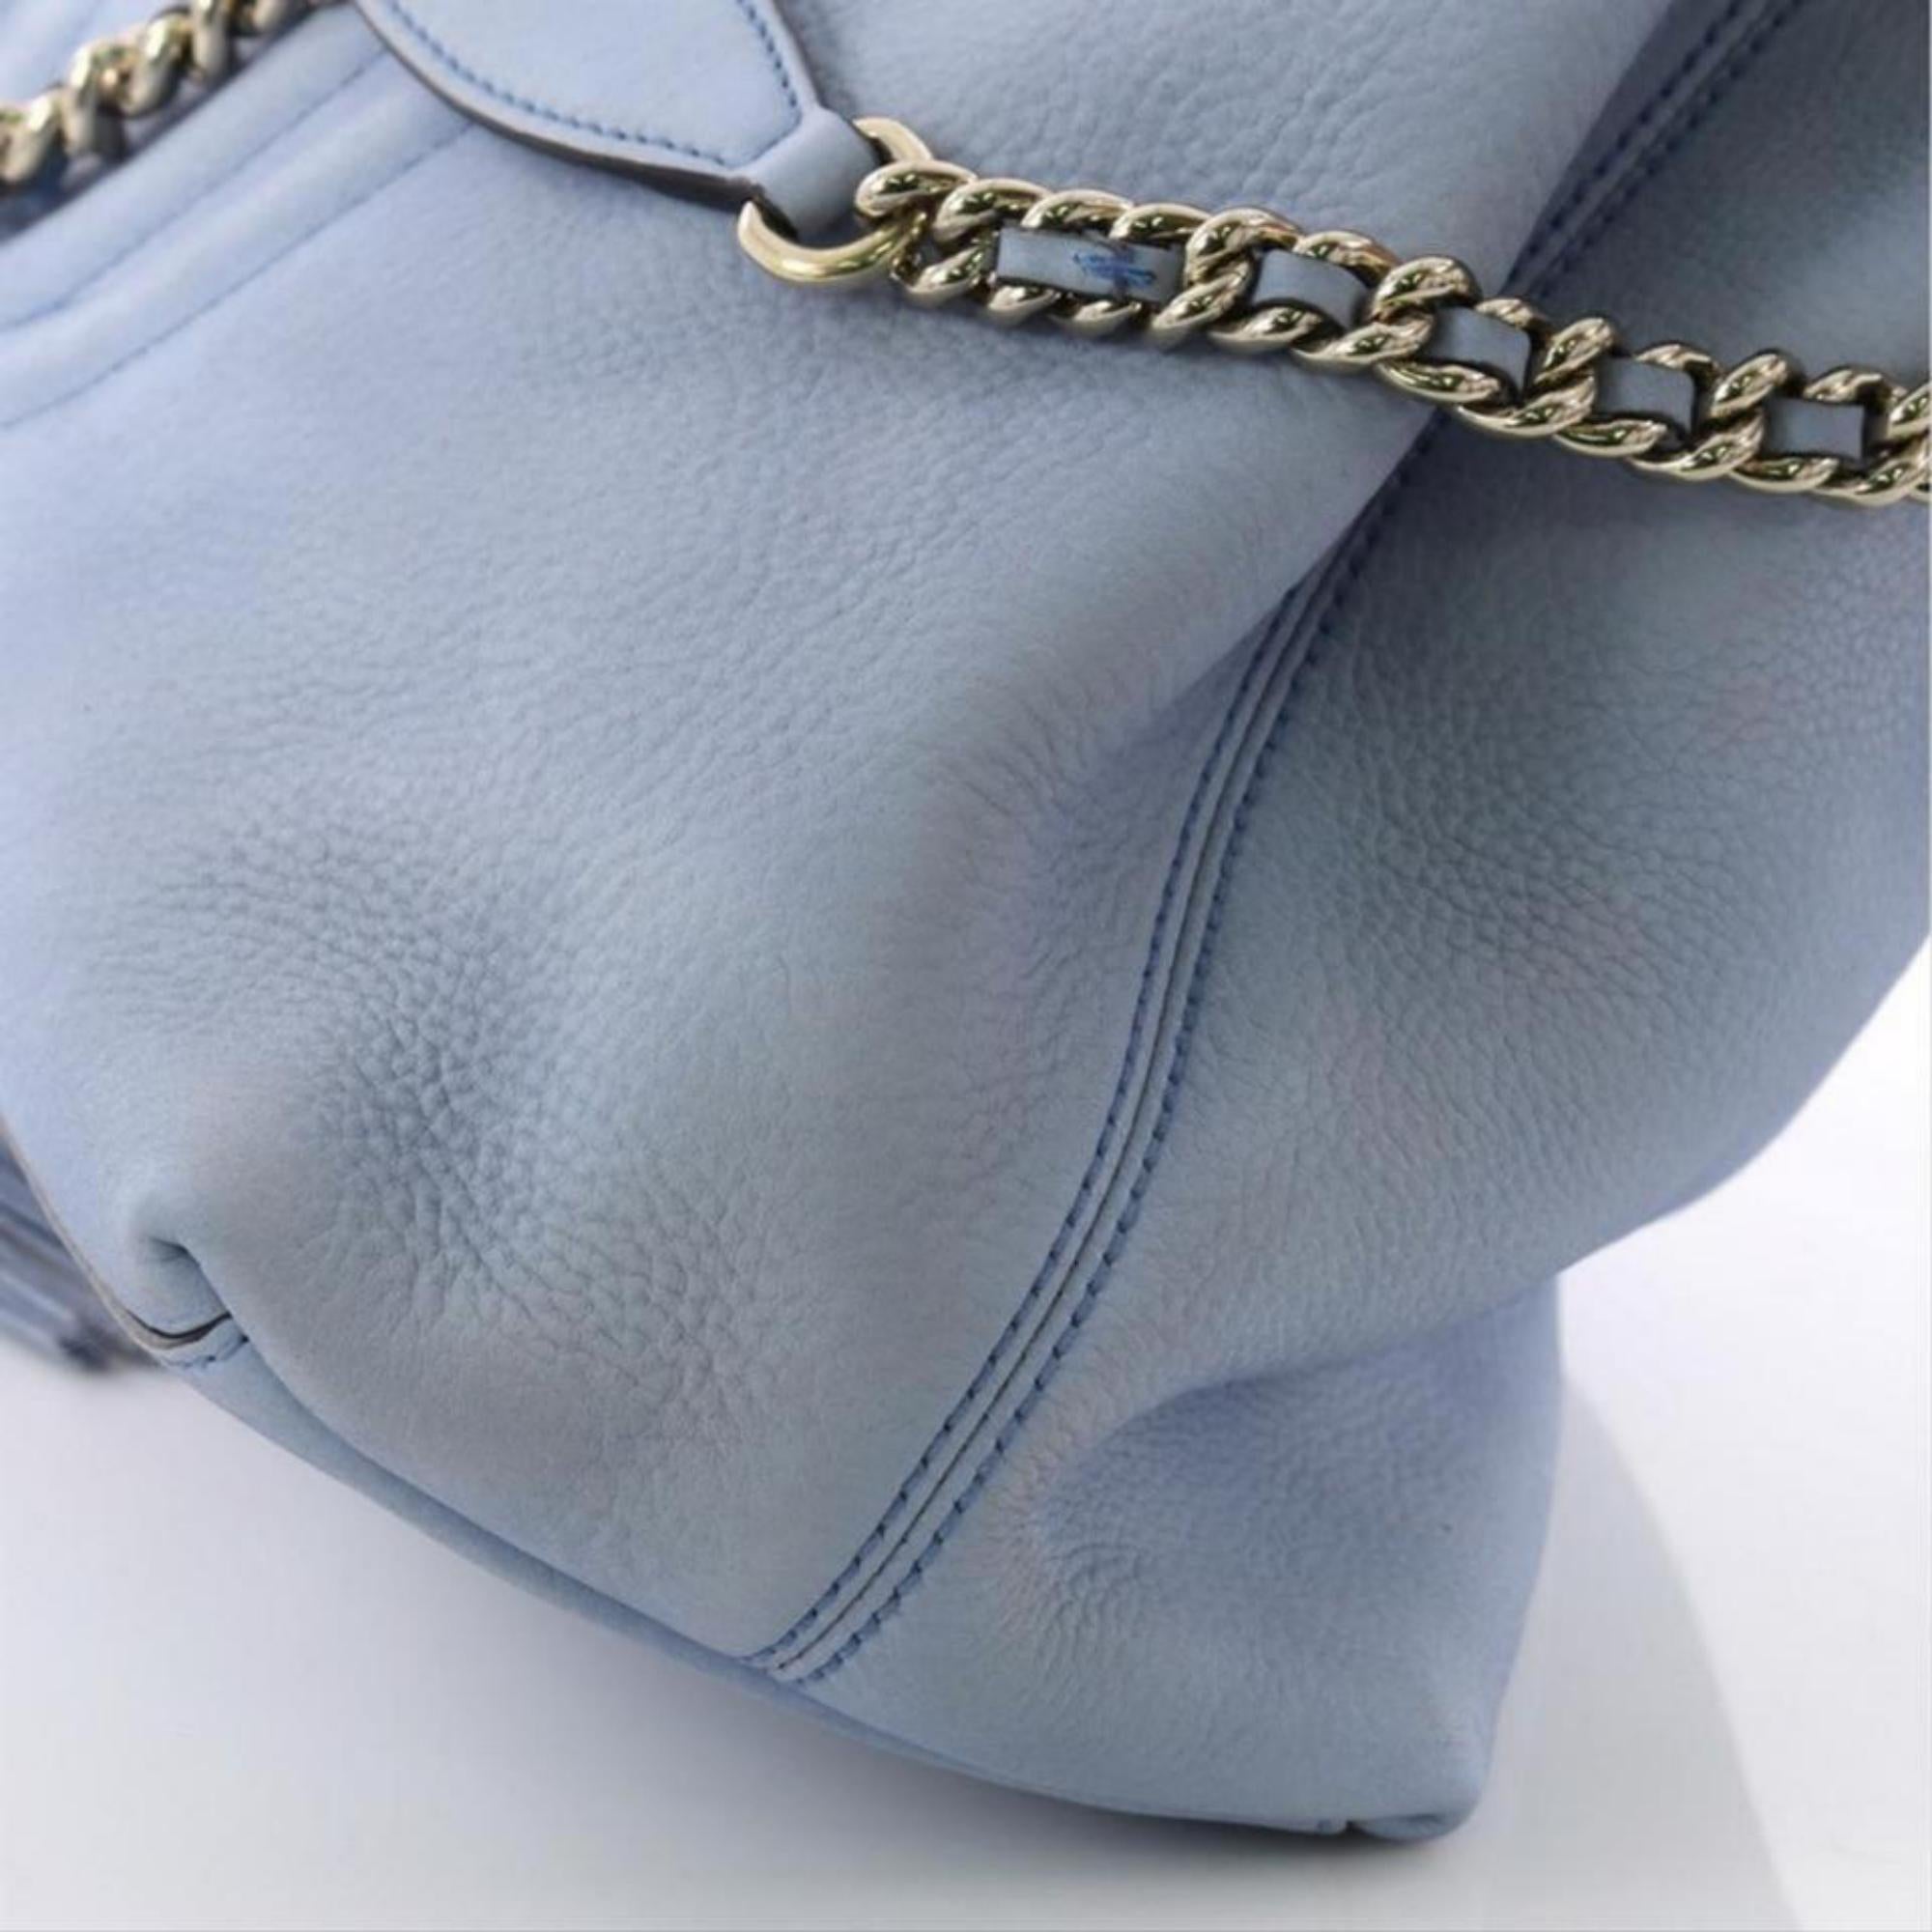 Gucci Soho Fringe Tassel Chain Tote 869083 Light Blue Leather Shoulder Bag For Sale 1